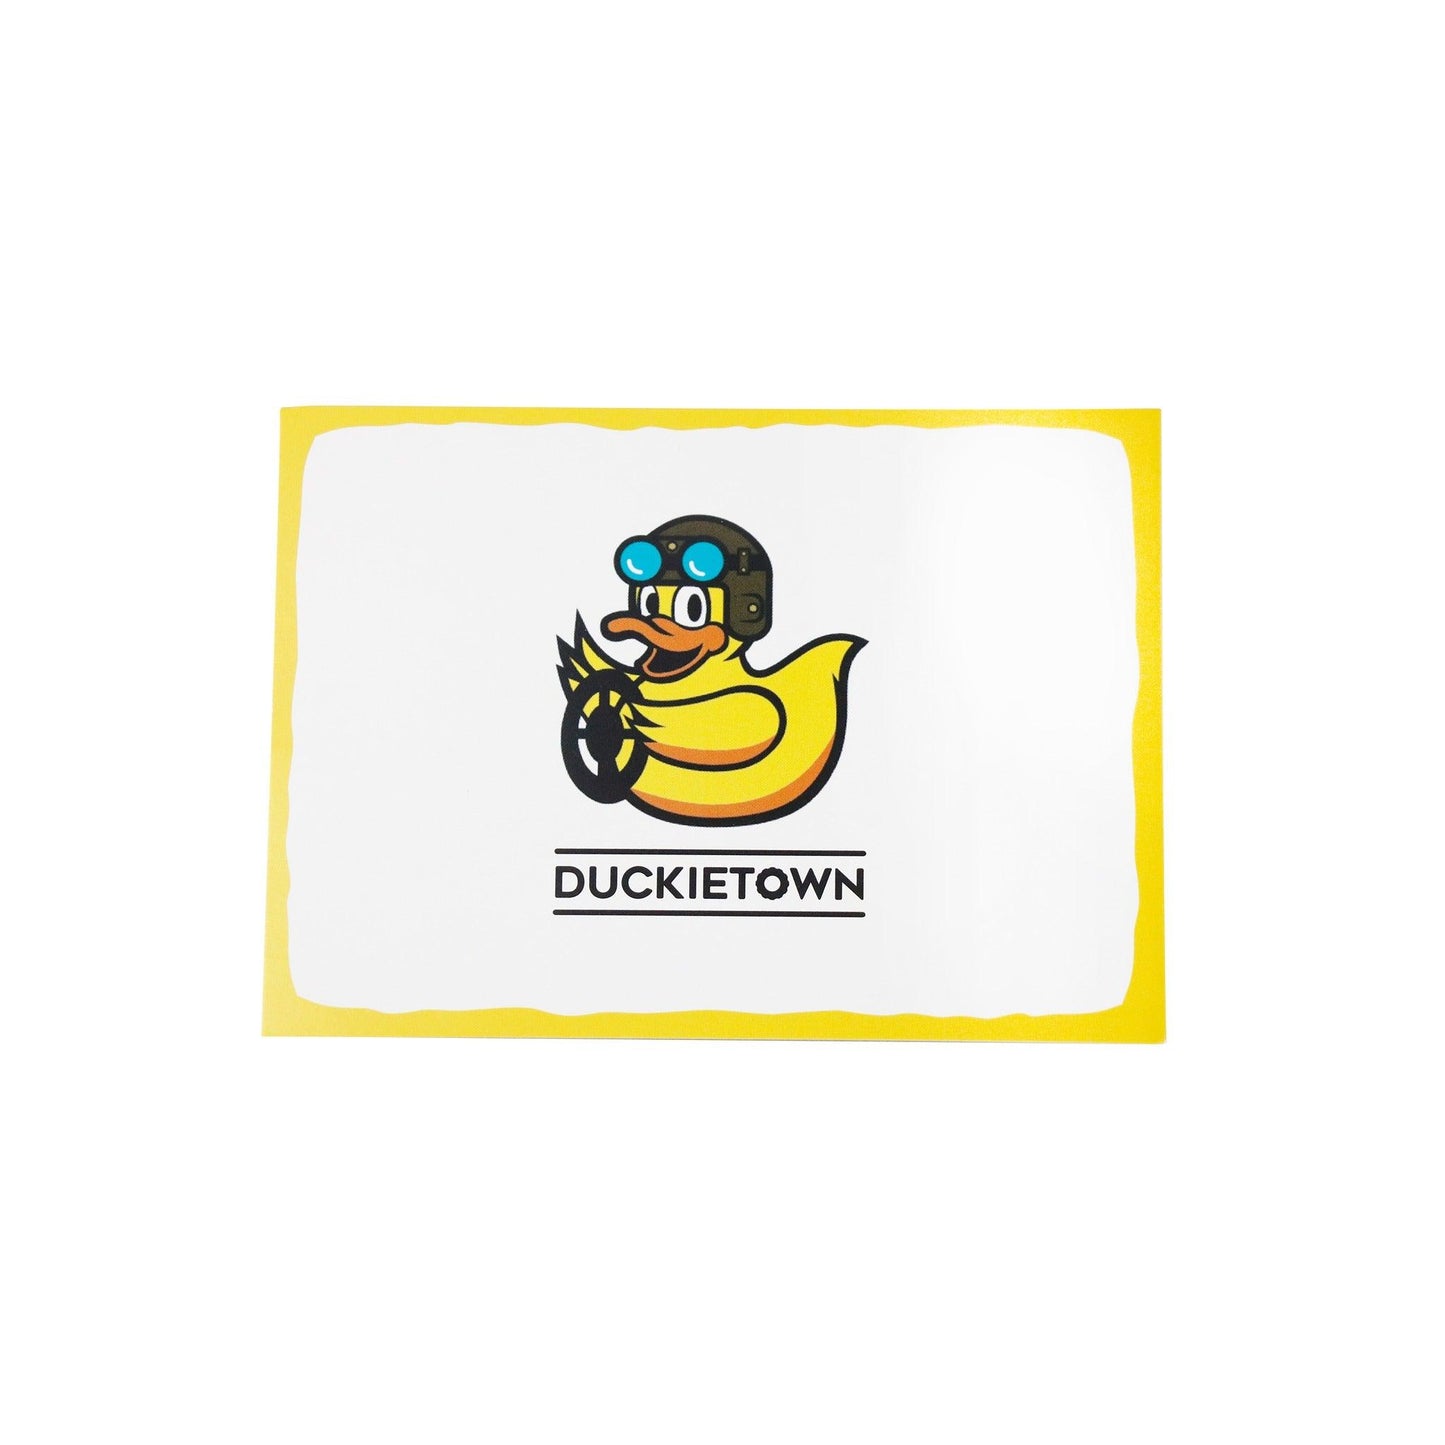 Duckiedrone (DD21) - the Duckietown project store